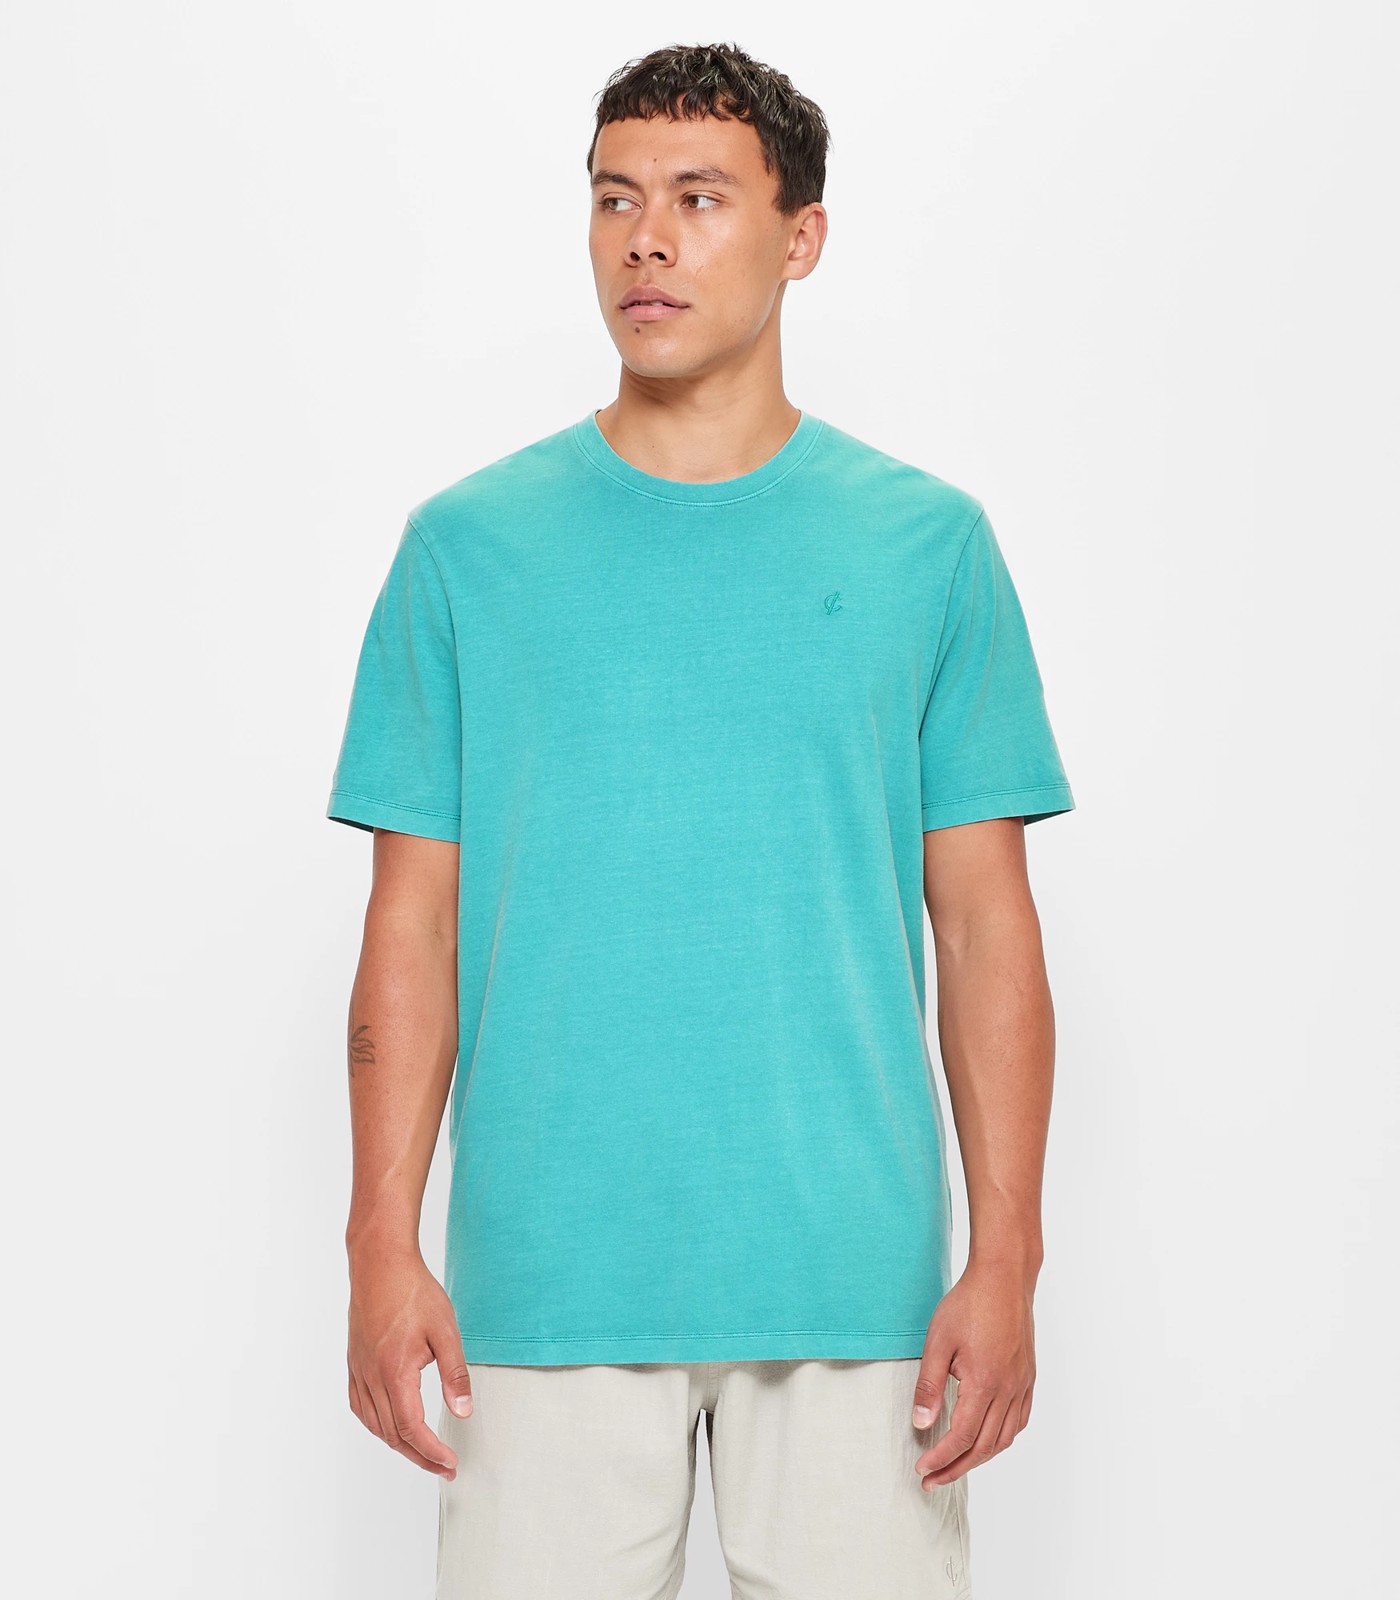 Commons Garment Dye T-Shirt - Teal | Target Australia